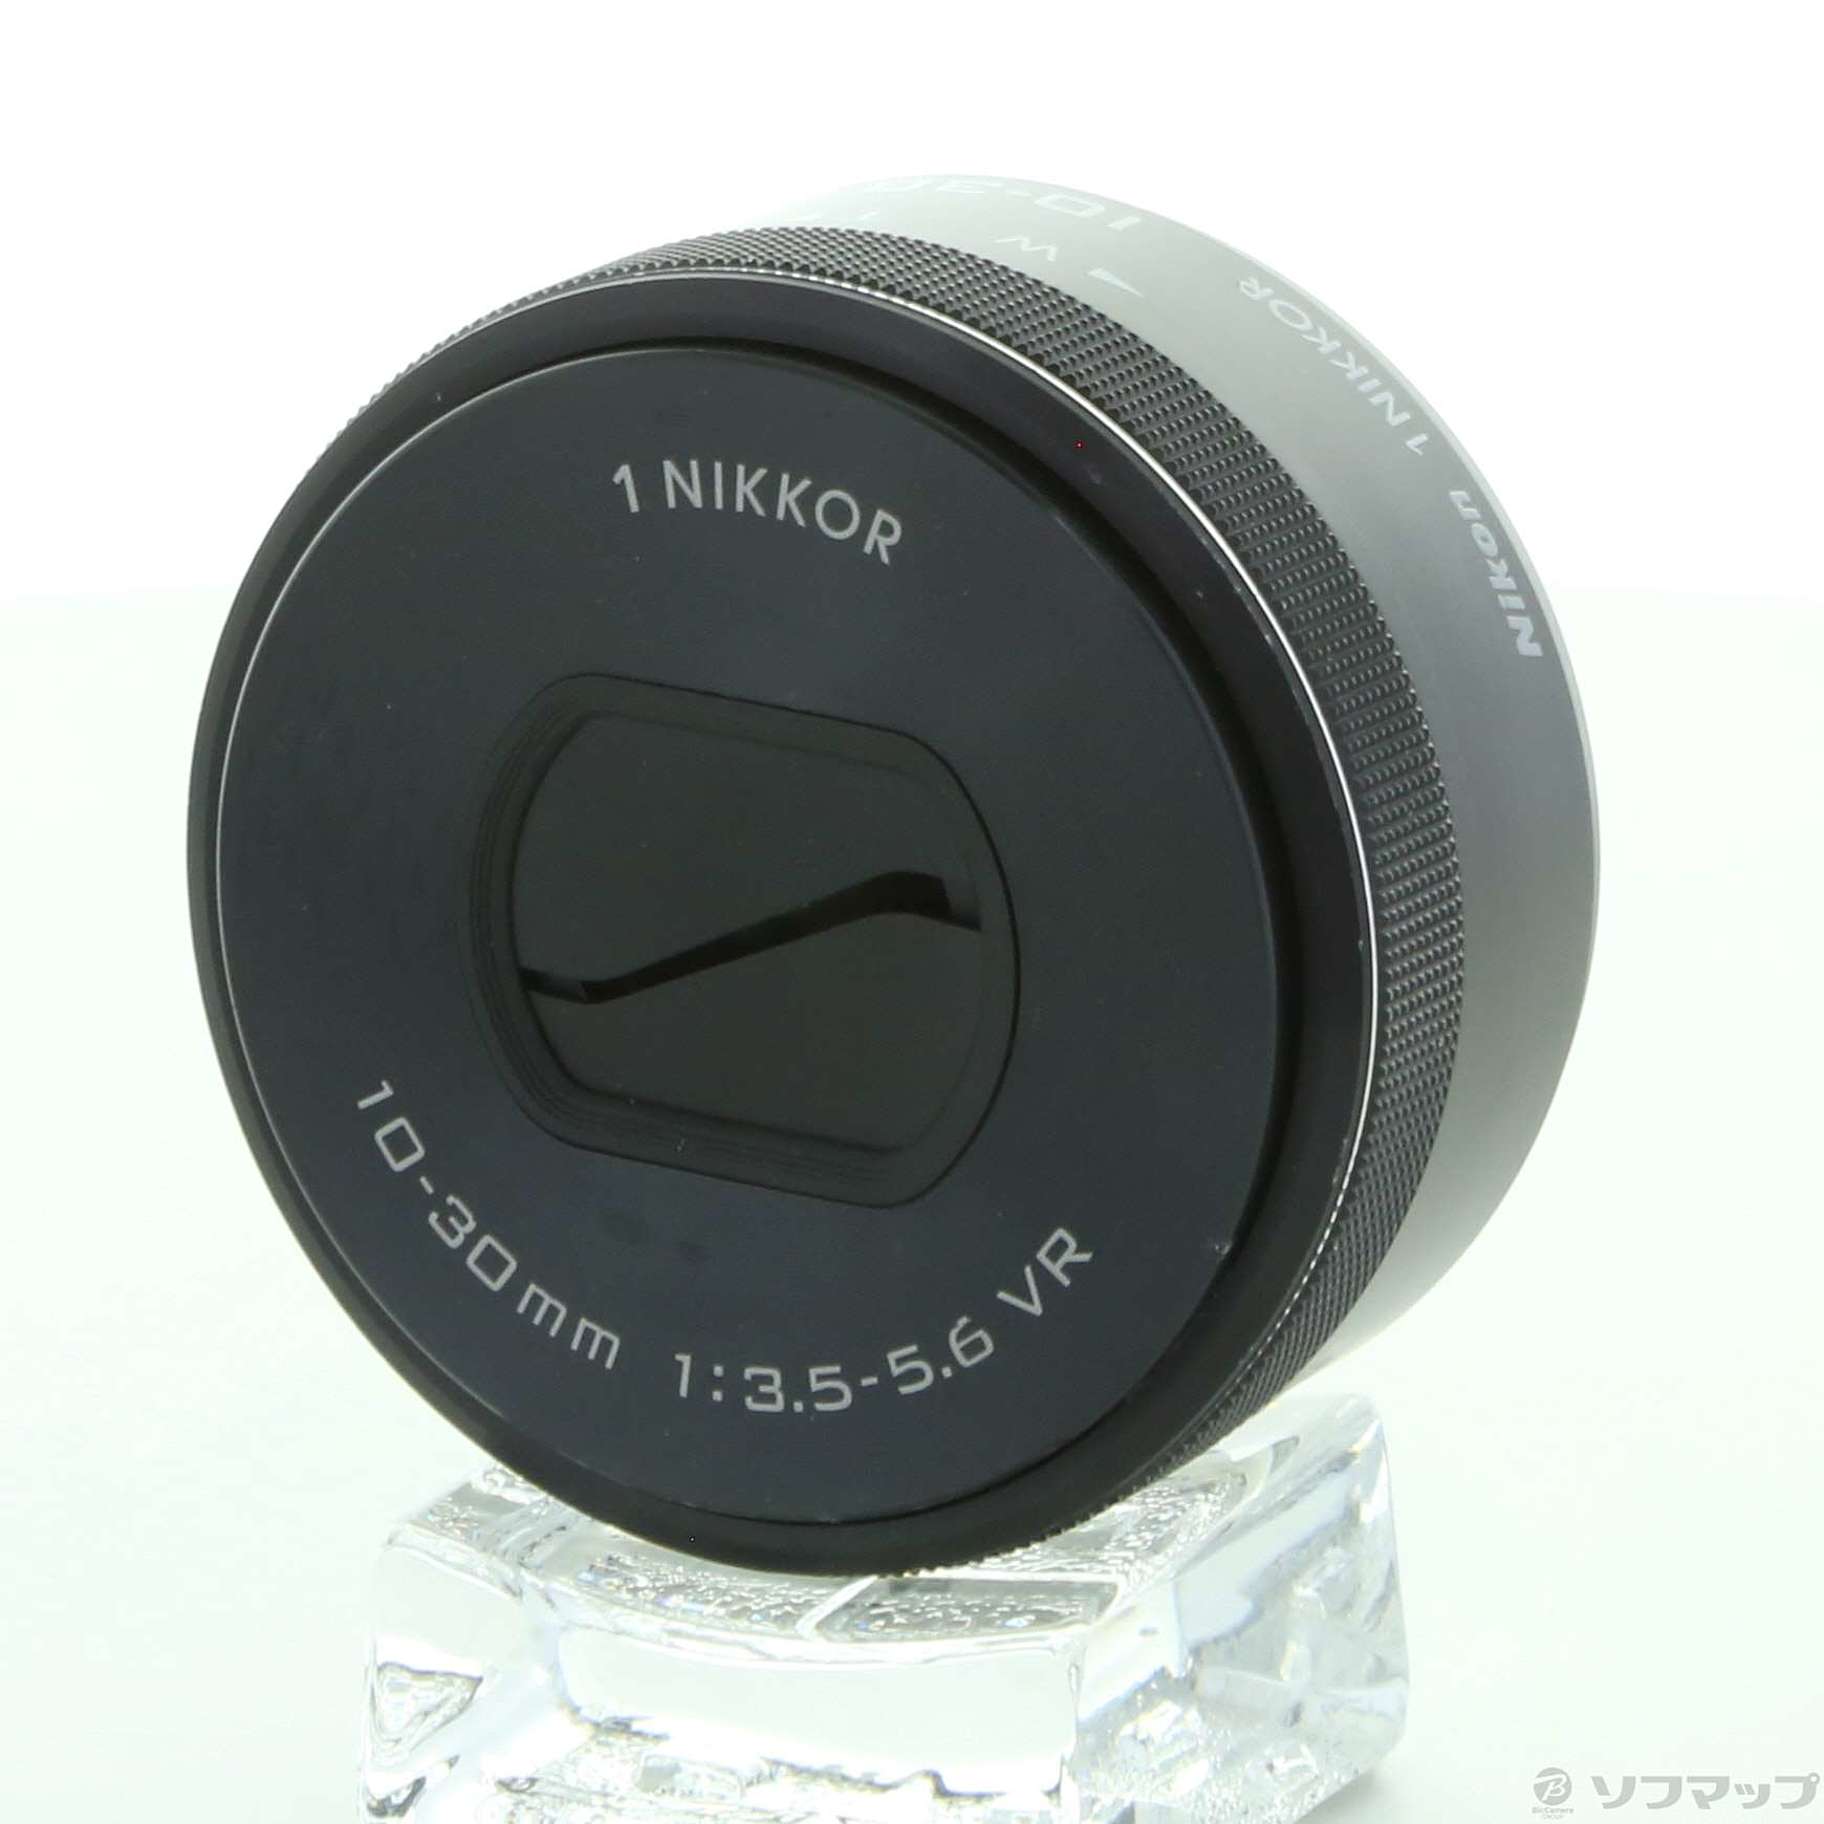 中古】セール対象品 1 NIKKOR VR 10-30mm F3.5-5.6 PD-ZOOM ブラック